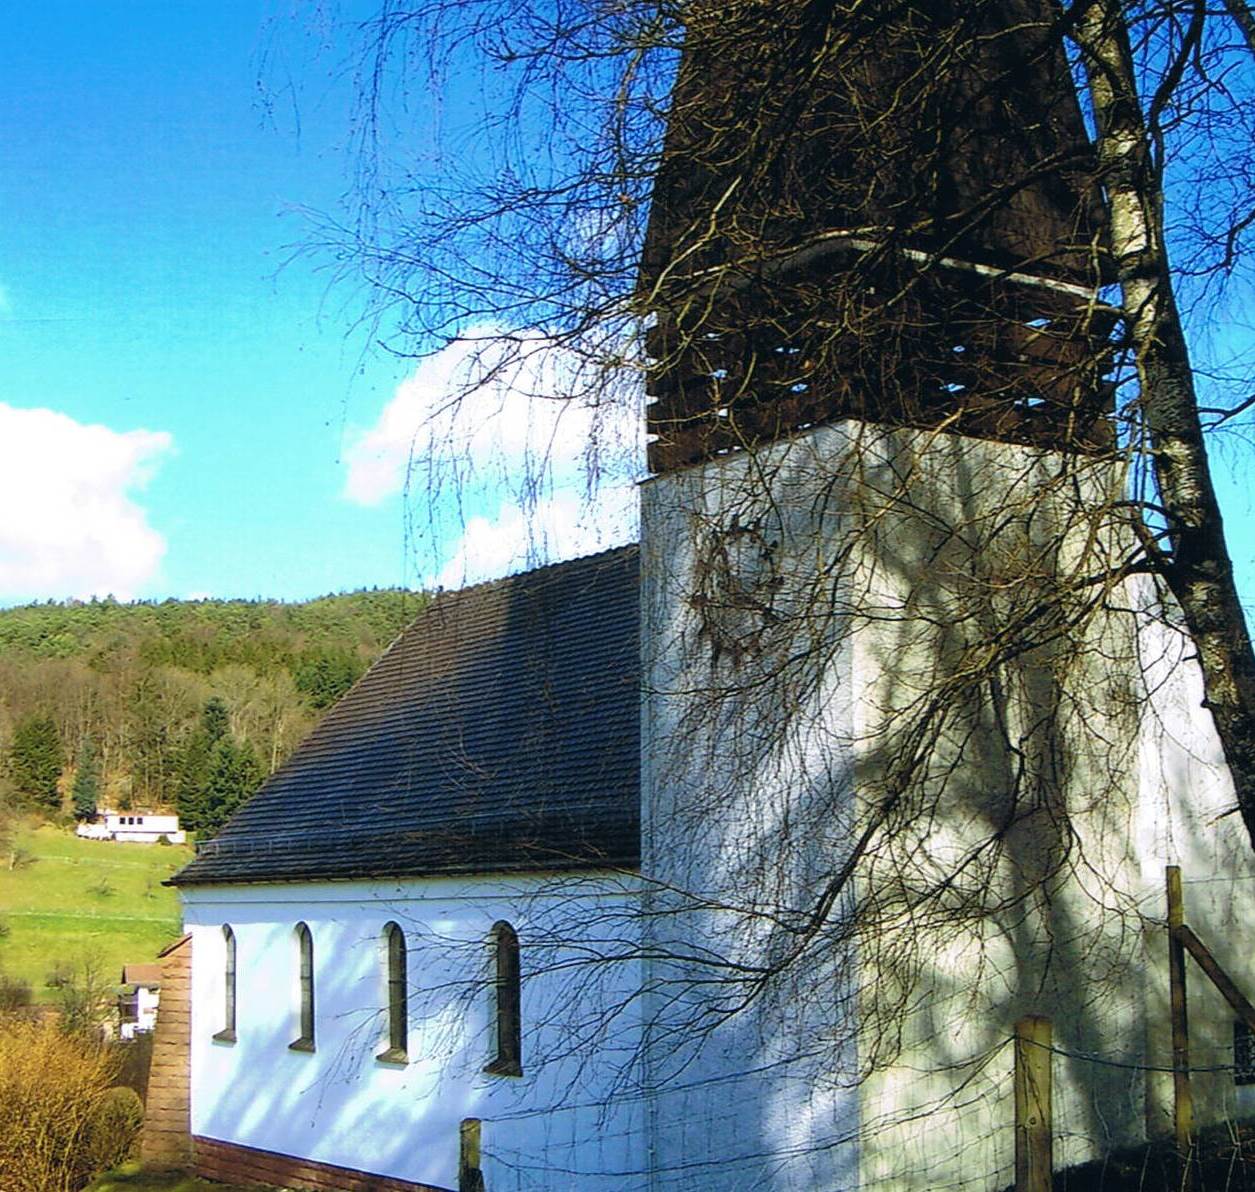 Bilder Evangelische Kirche Finkenbach - Evangelische Kirchengemeinde Rothenberg